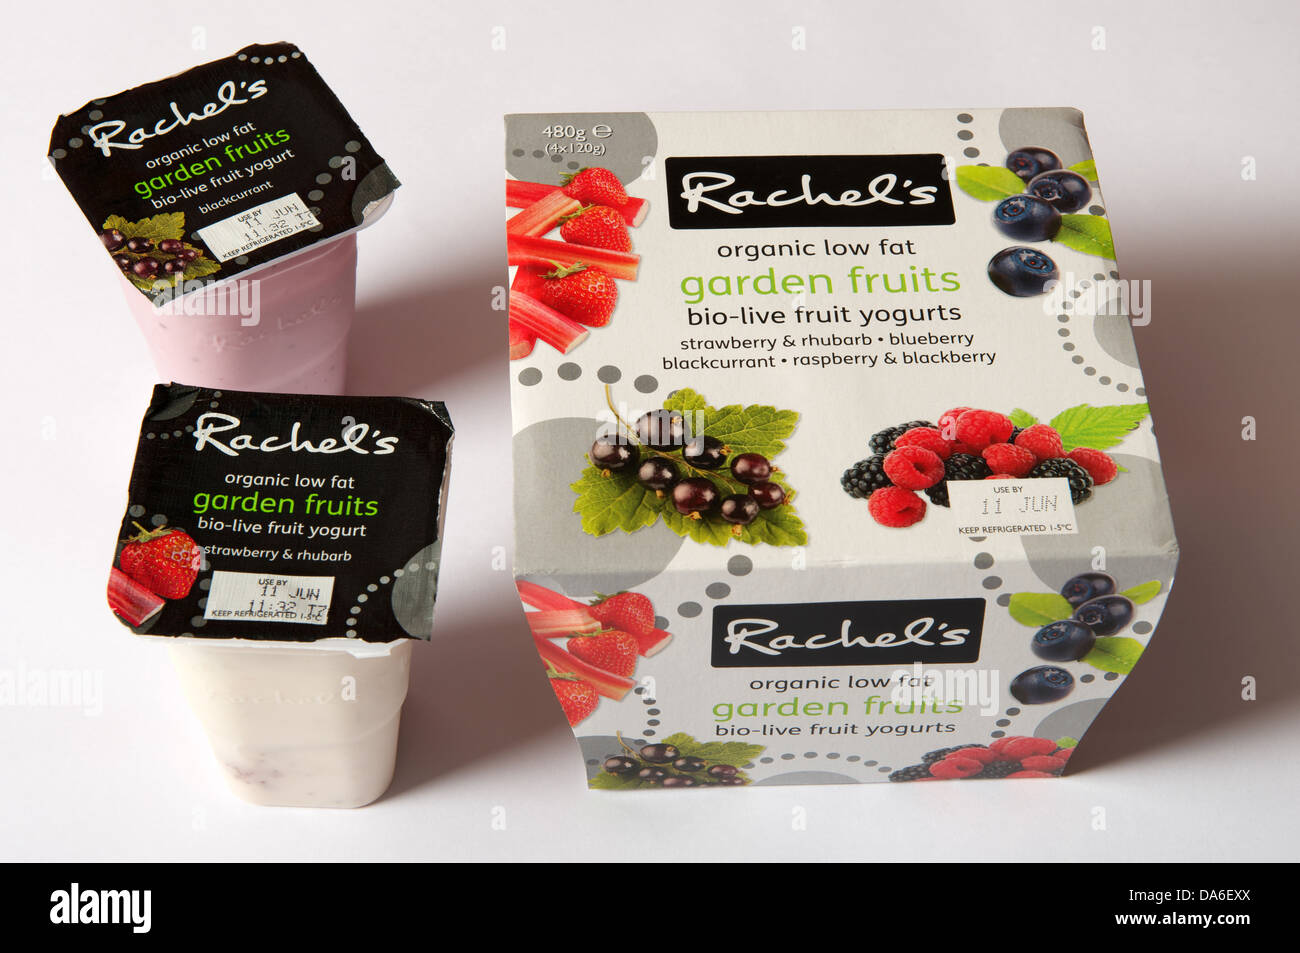 Faible en gras organiques Rachels yaourts fruits jardin Banque D'Images